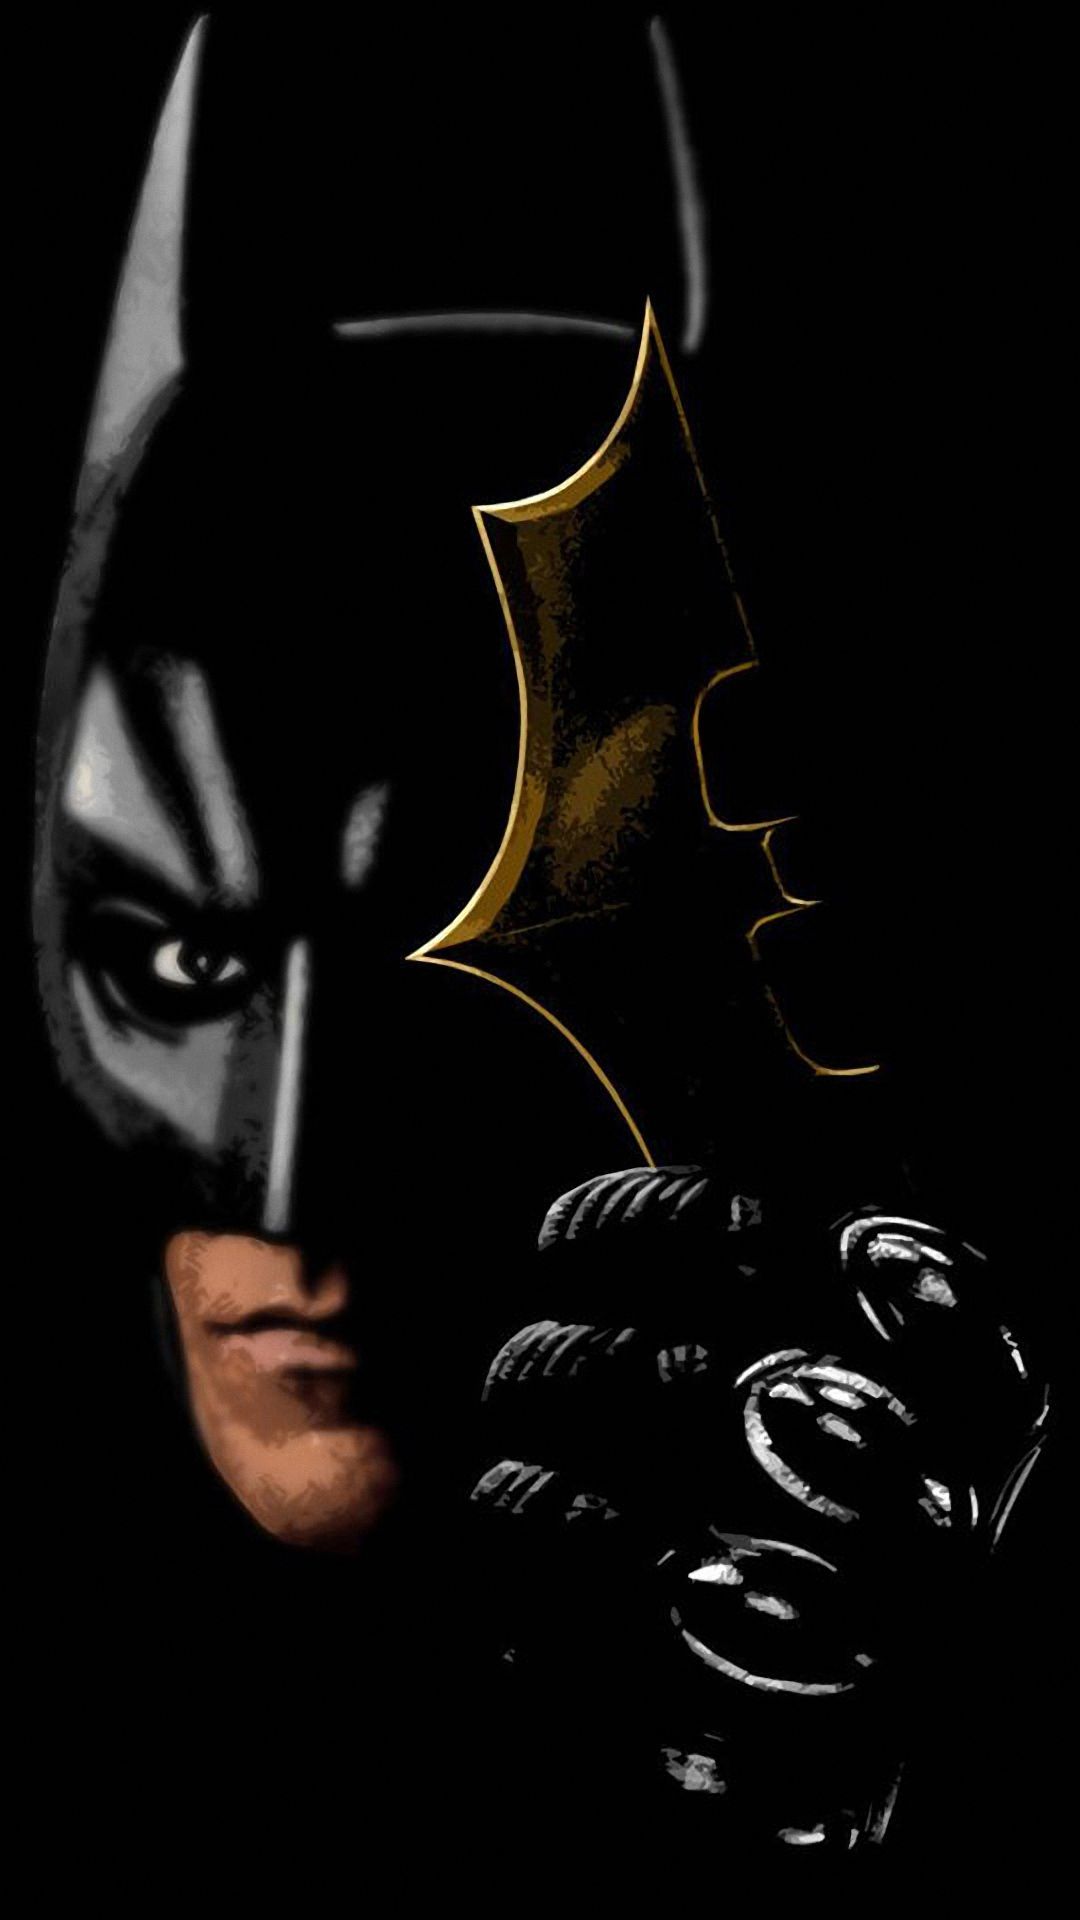 batman fonds d'écran hd,homme chauve souris,personnage fictif,ligue de justice,super héros,supervillain